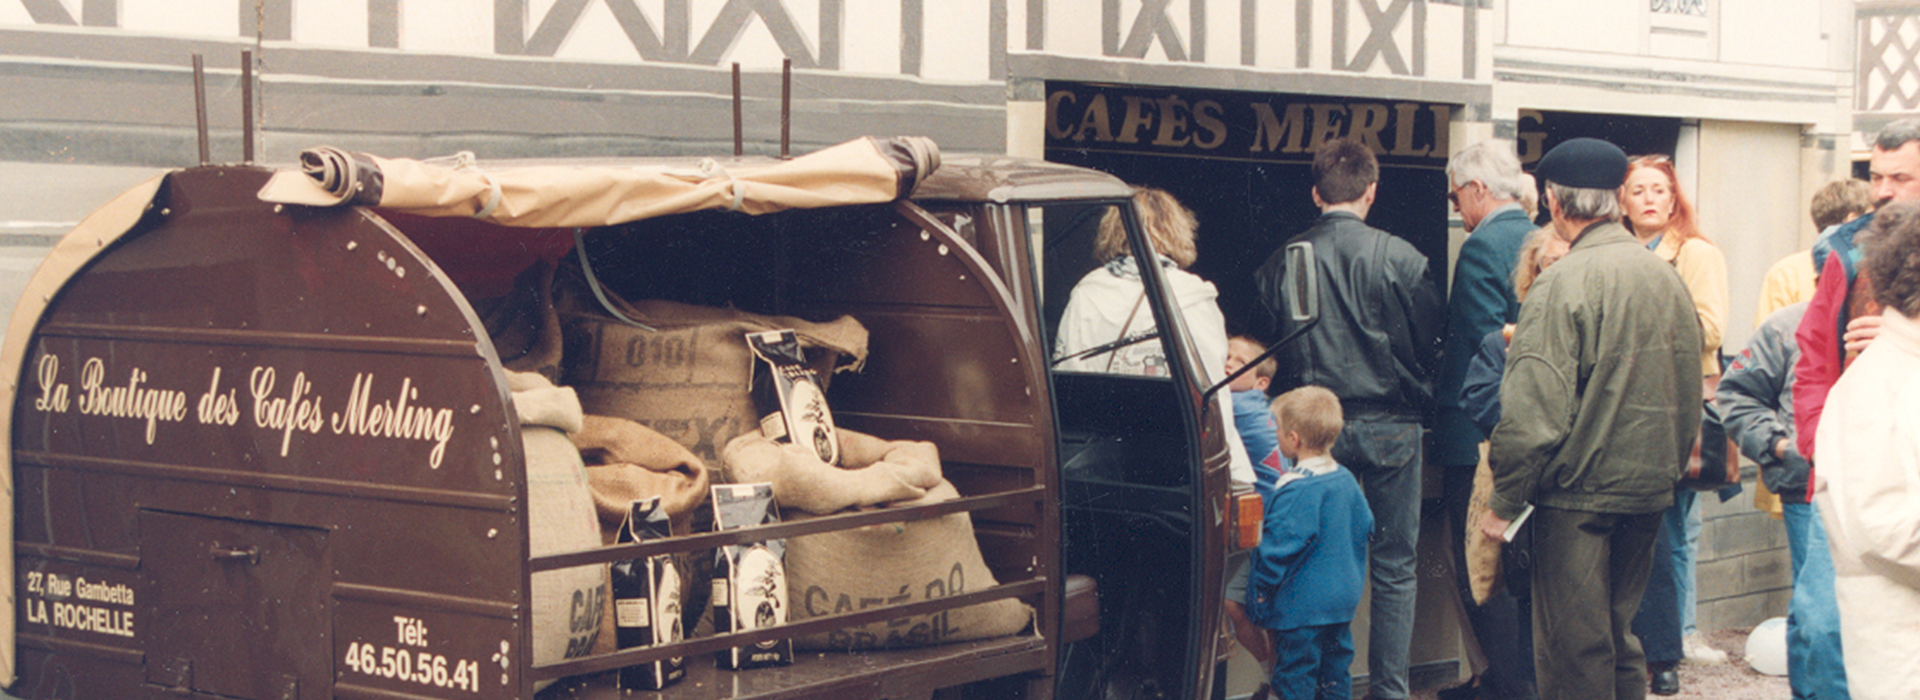 Les premières ventes des cafés Merling sur la place du marché de La Rochelle.